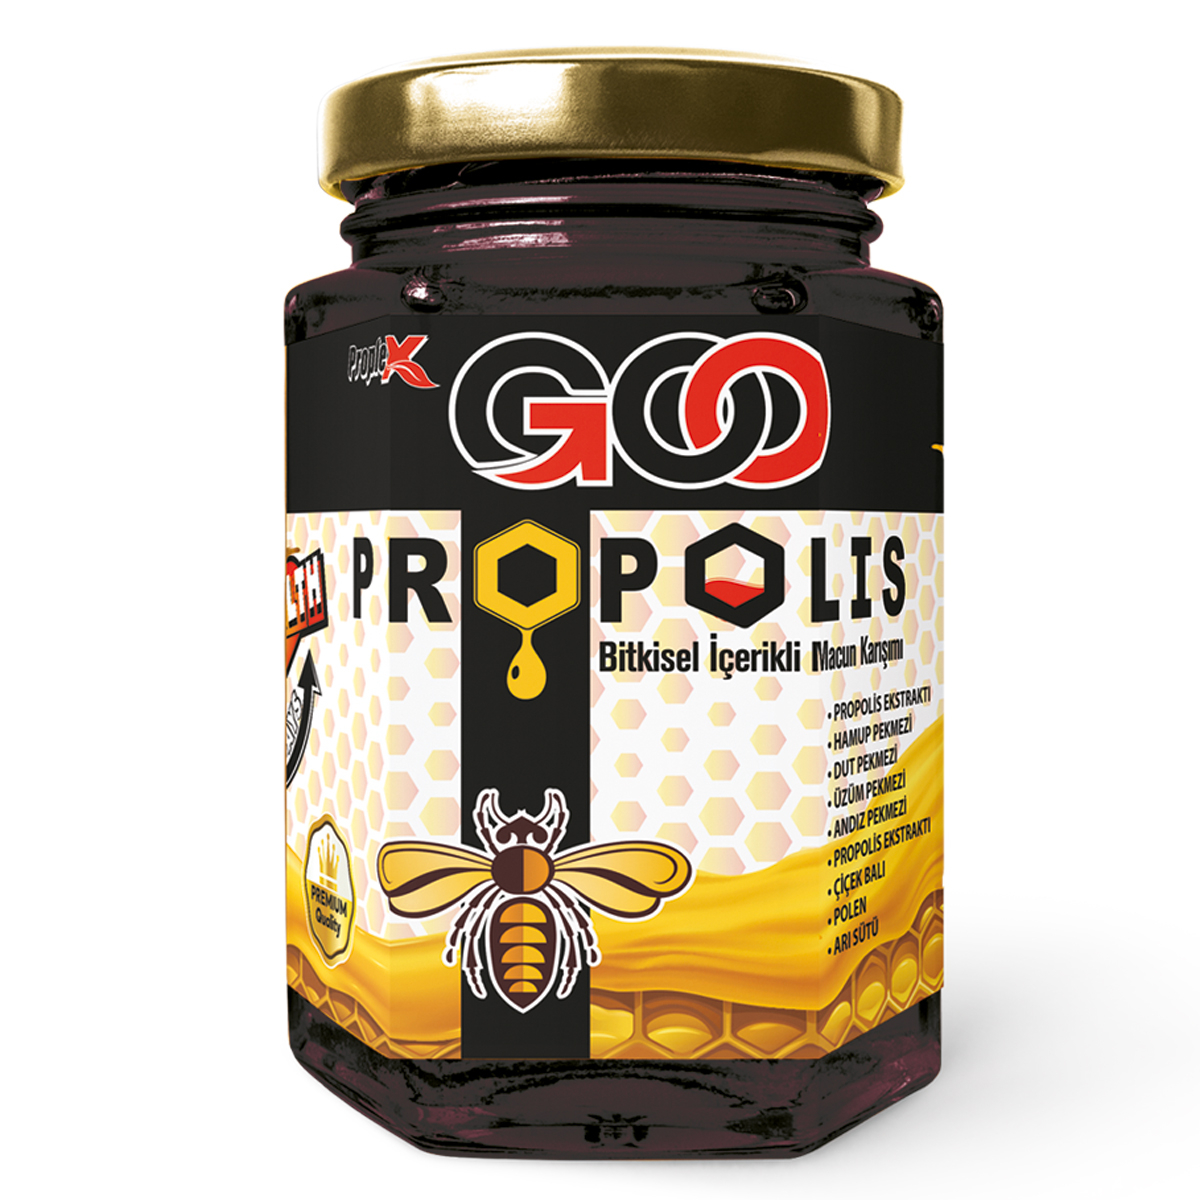 Proplex Goo Propolis Bitkisel İçerikli Macun Karışımı 230 gr